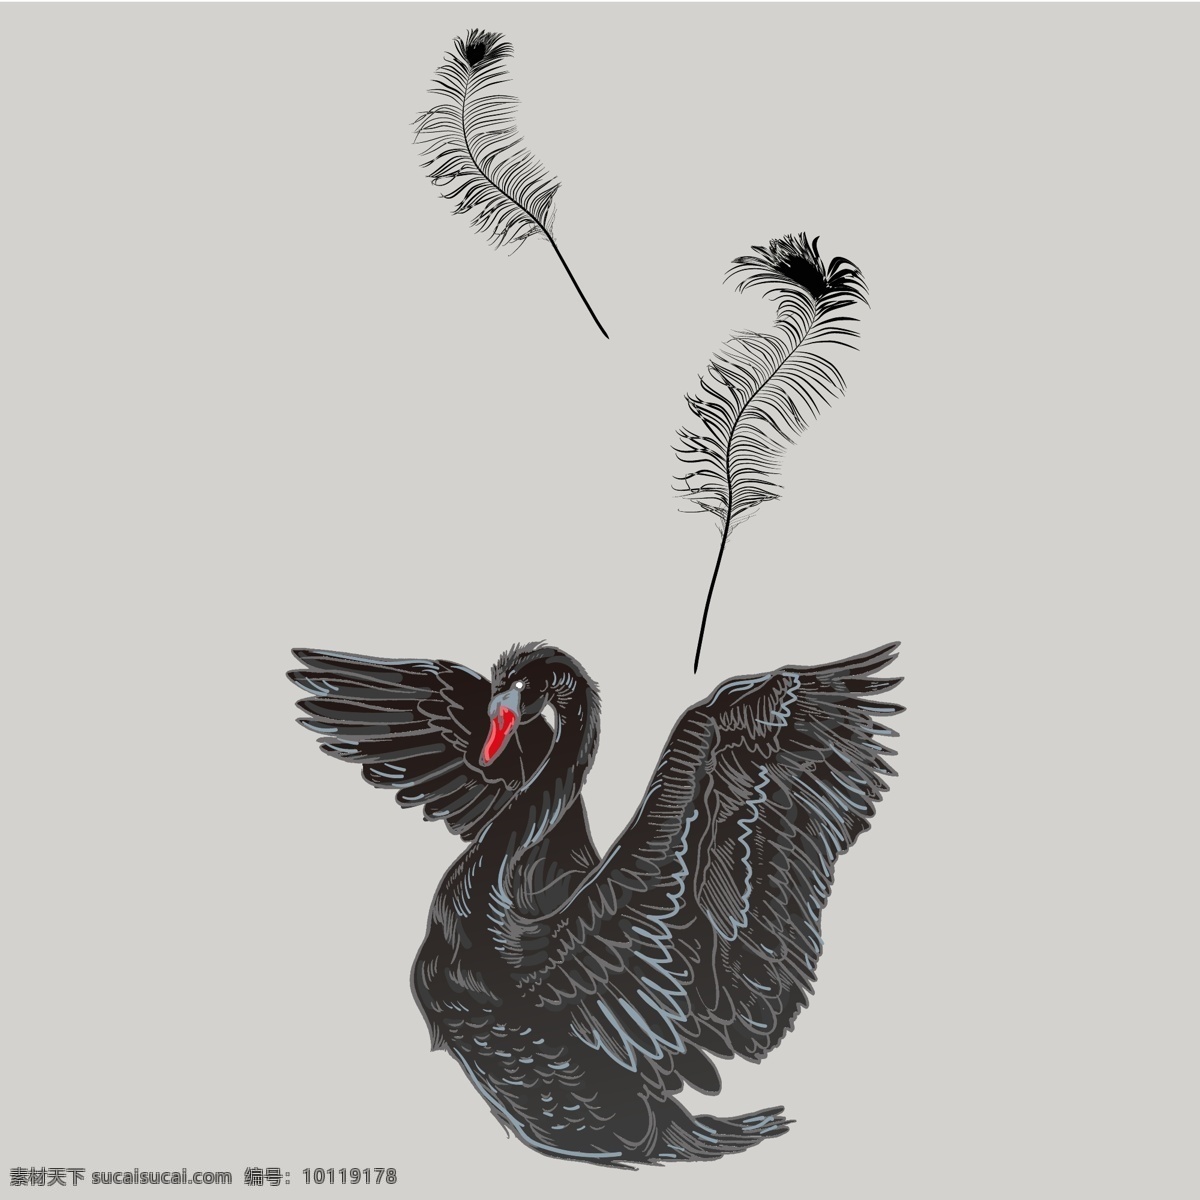 黑天鹅 趣味卡通 卡通壁纸 装饰画 插画素材 动物 动漫 鸟类 天鹅 天鹅素材 羽毛 鹅 印花 服装设计